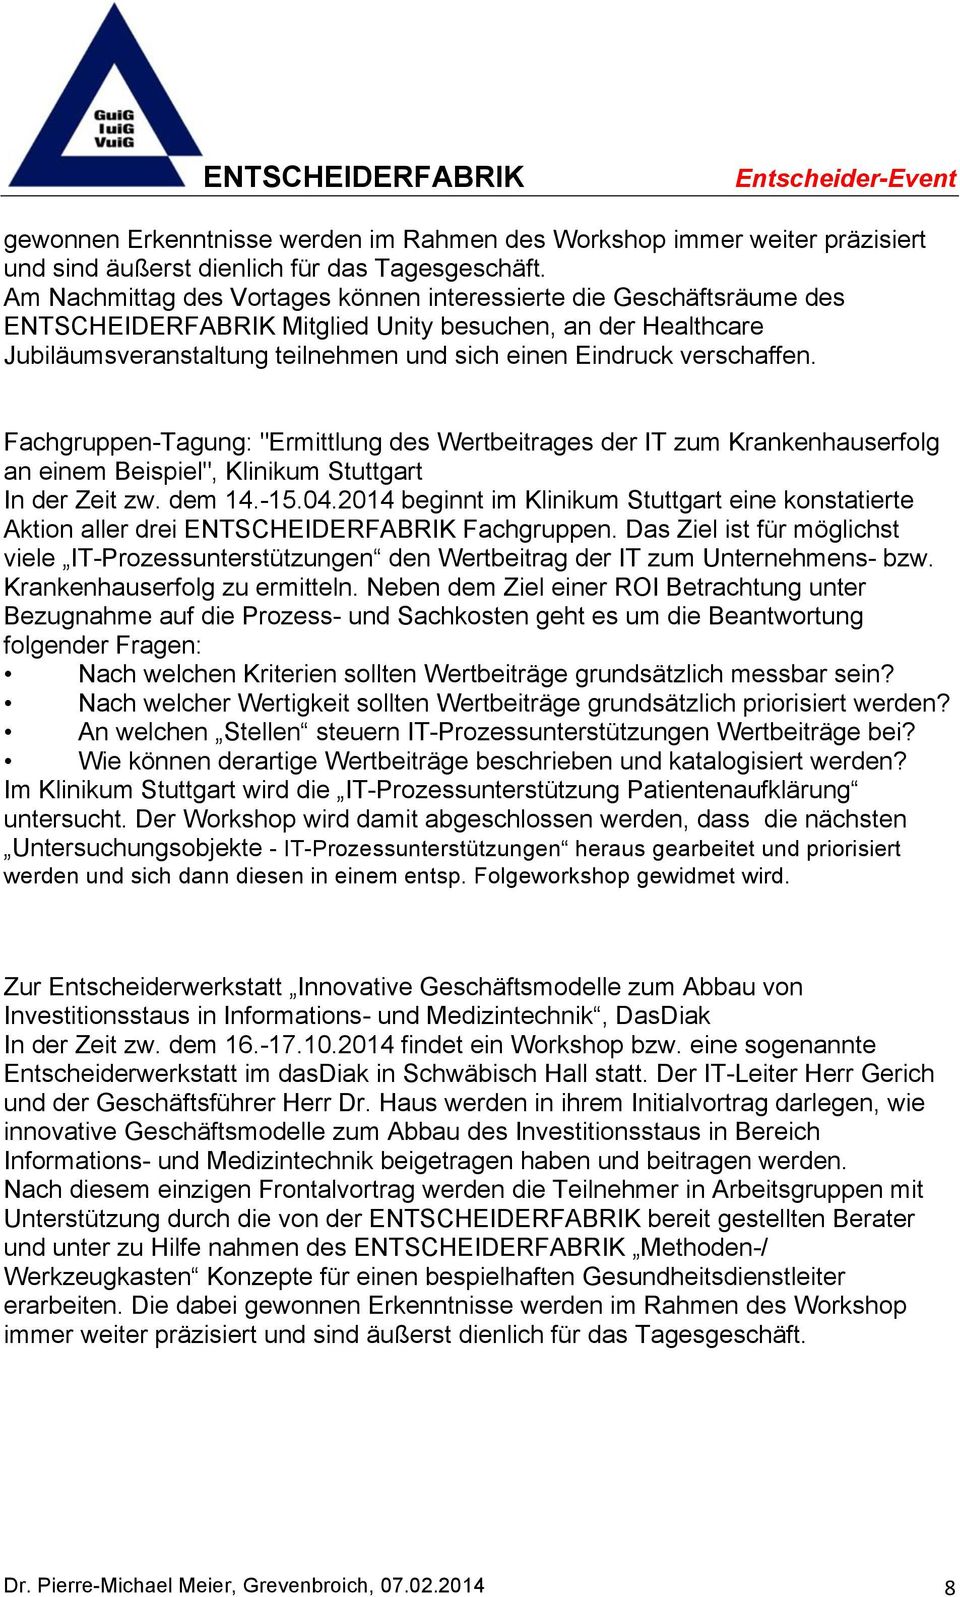 verschaffen. Fachgruppen-Tagung: "Ermittlung des Wertbeitrages der IT zum Krankenhauserfolg an einem Beispiel", Klinikum Stuttgart In der Zeit zw. dem 14.-15.04.